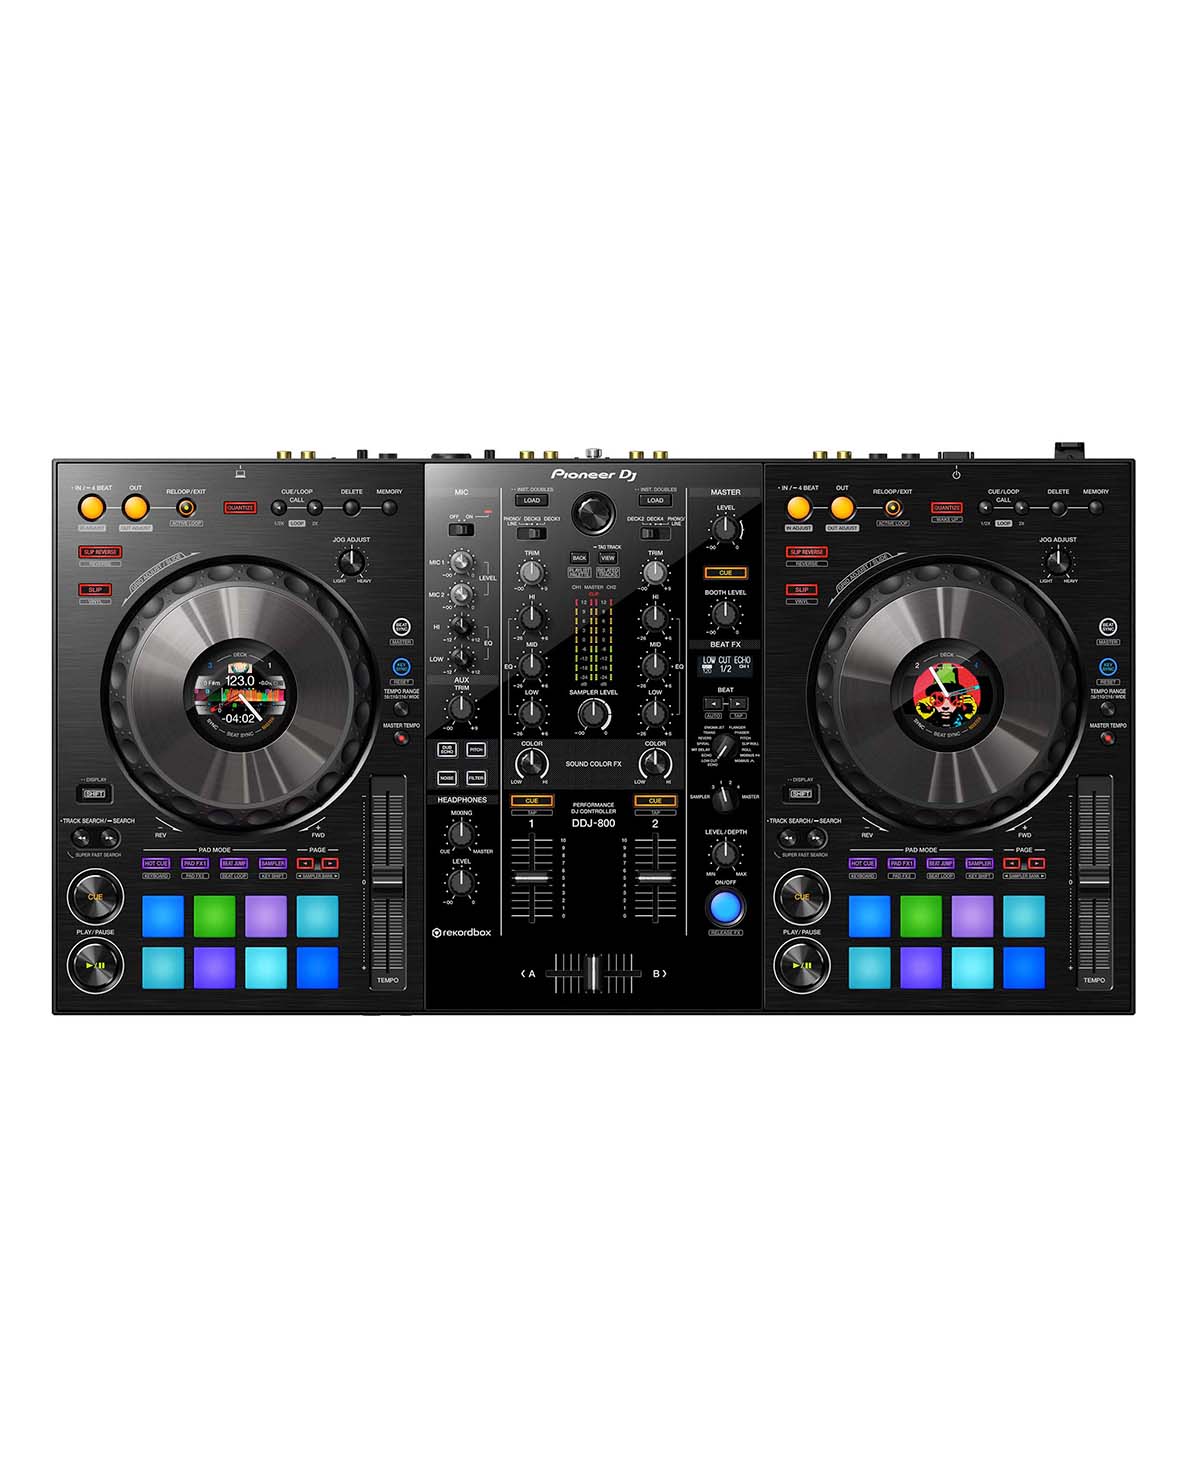 DDJ-800 PIONEER DJ 1